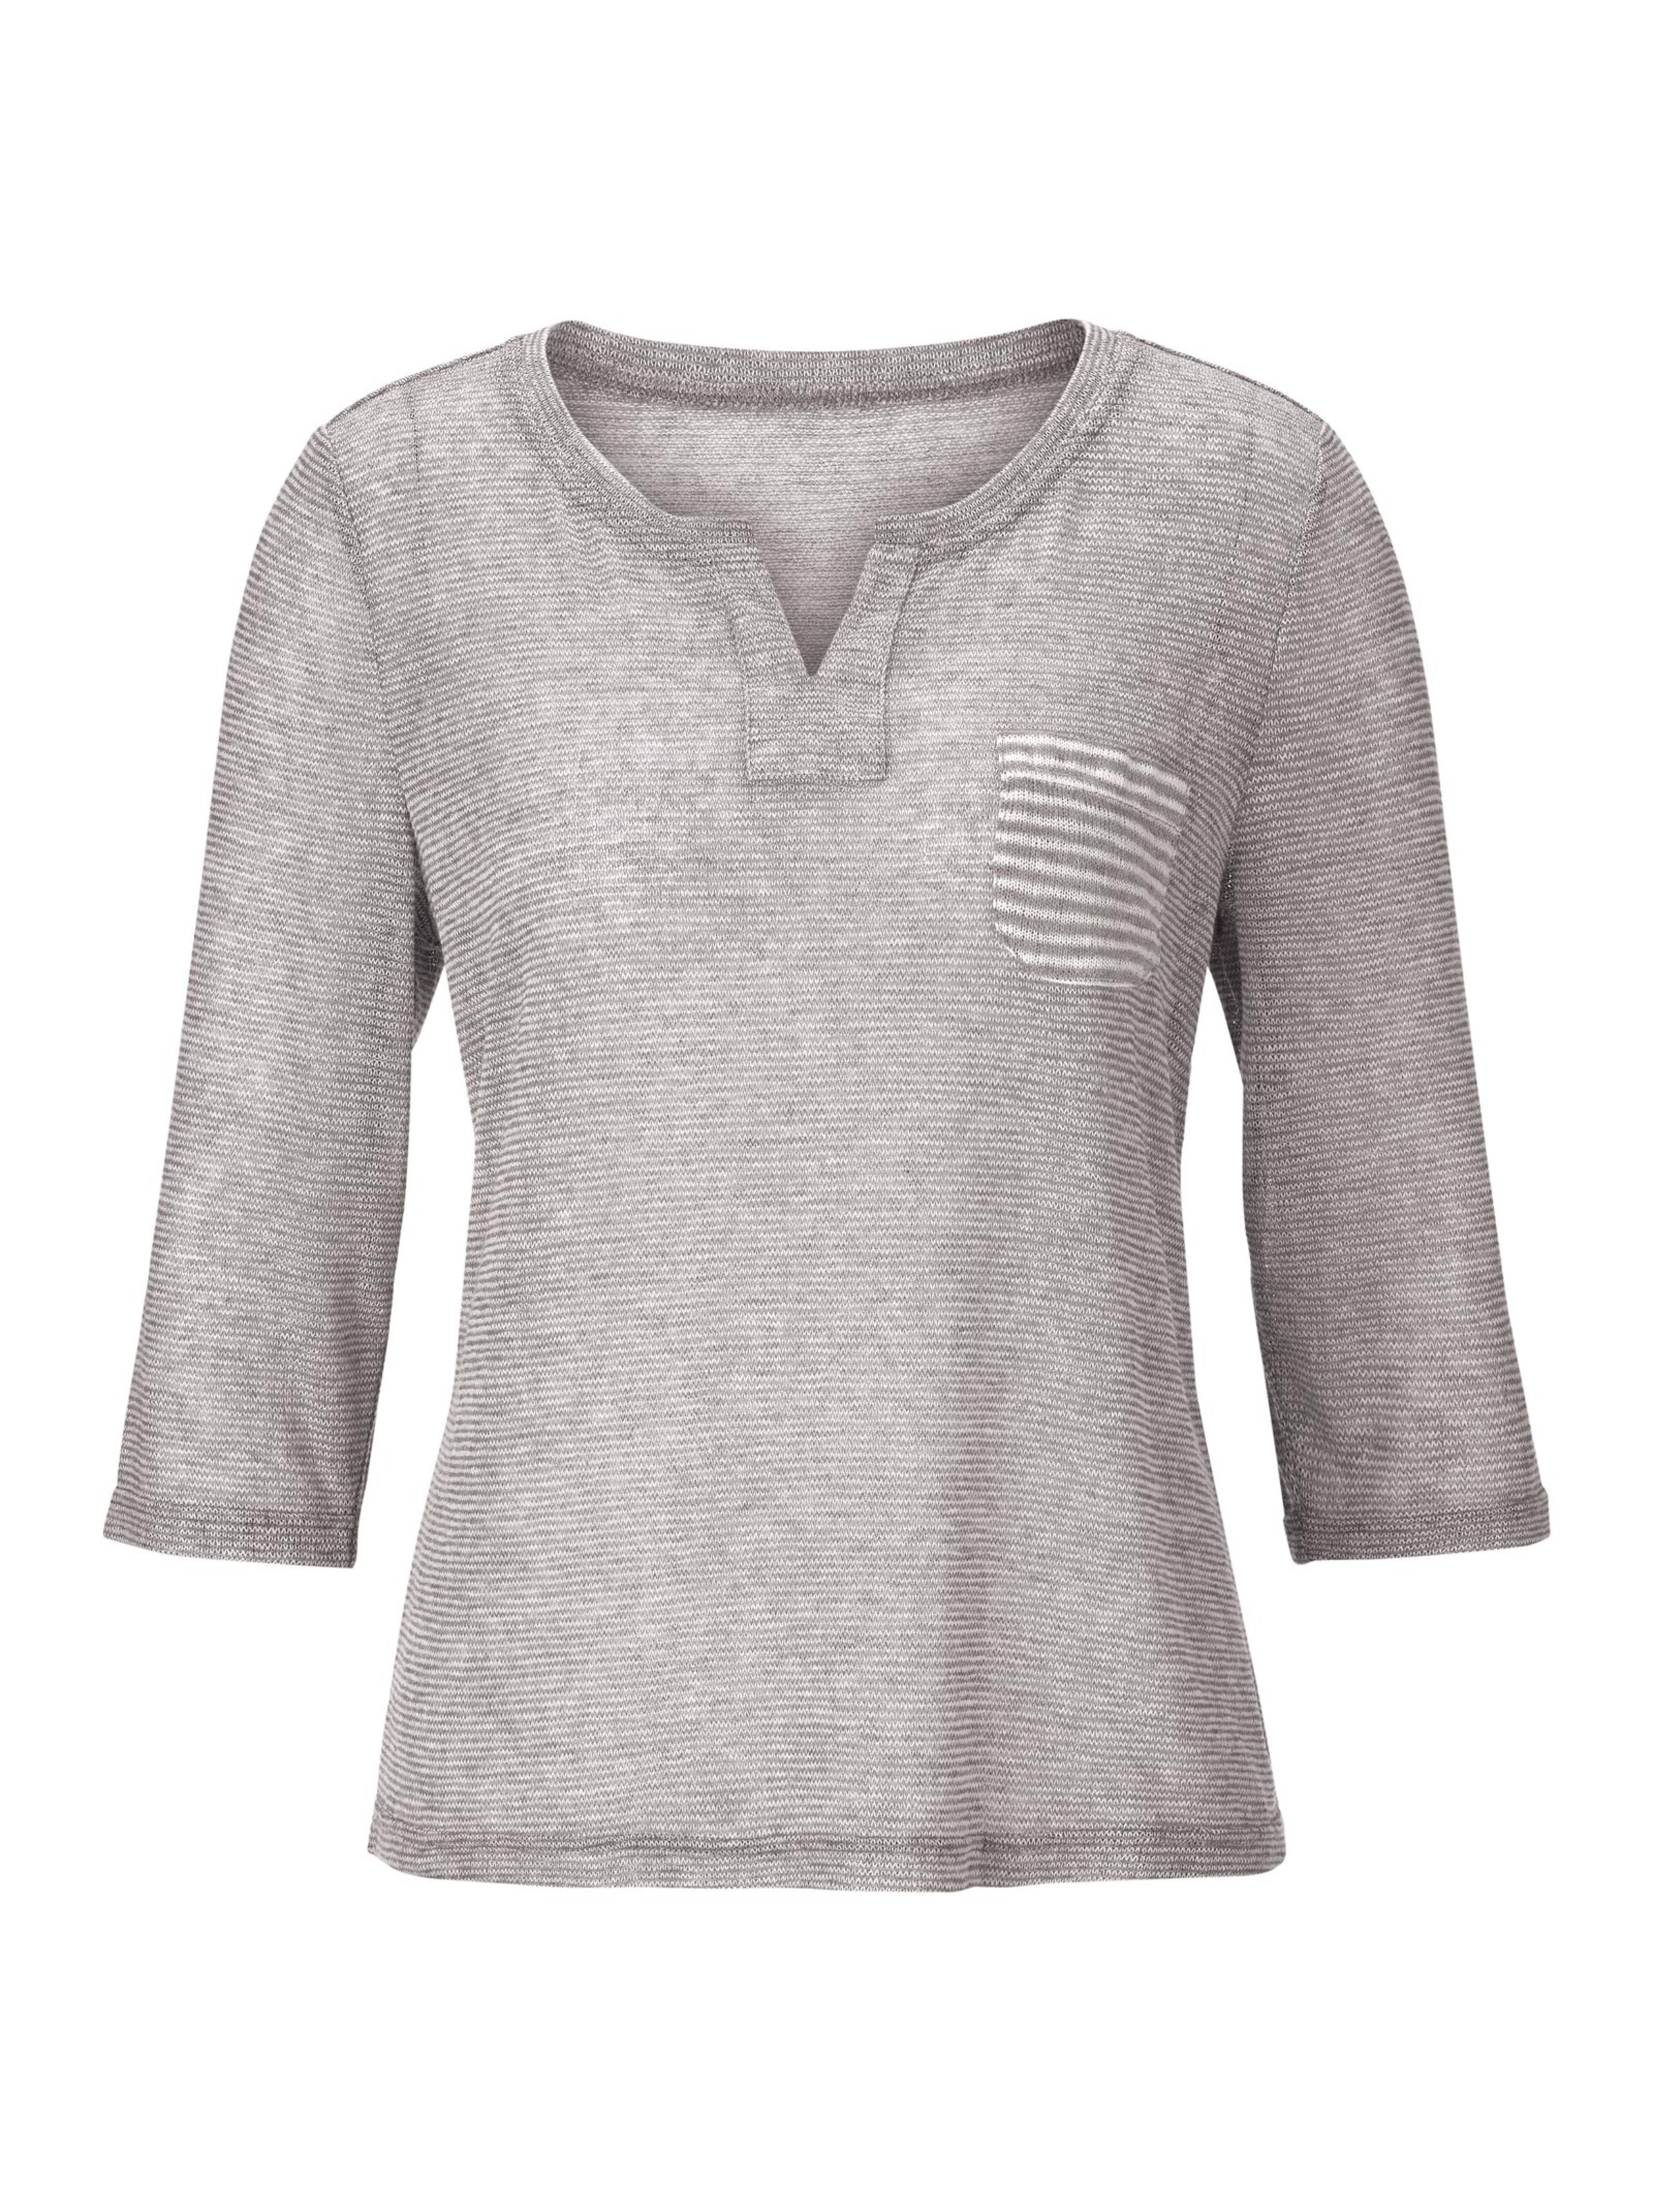 Damenmode Shirts 3/4-Arm-Shirt in grau 